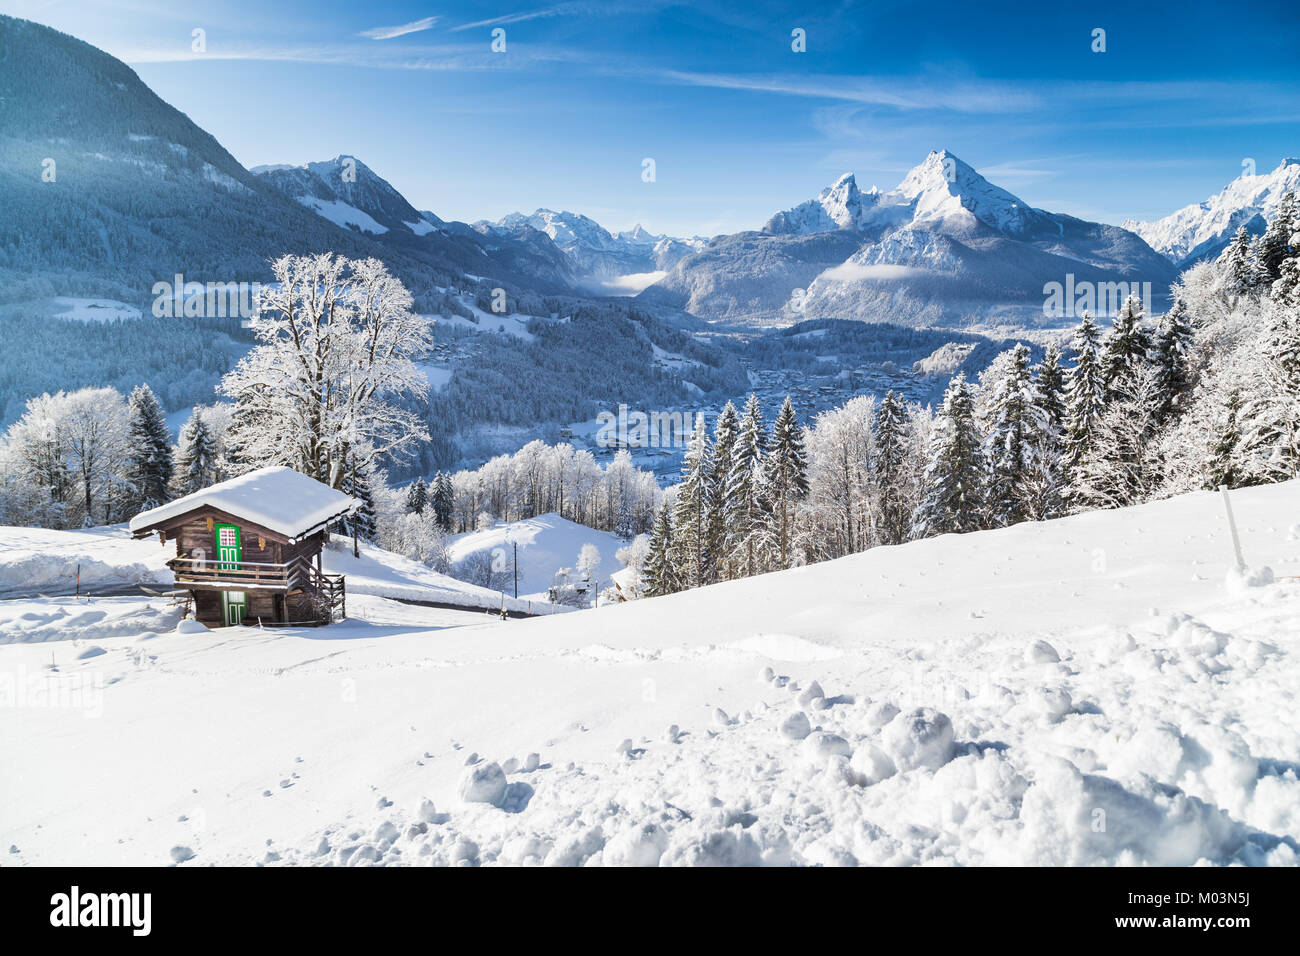 Vue panoramique de beaux paysages de montagne paysage hivernal dans les Alpes avec chalet de montagne traditionnel par une froide journée ensoleillée avec ciel bleu et clou Banque D'Images